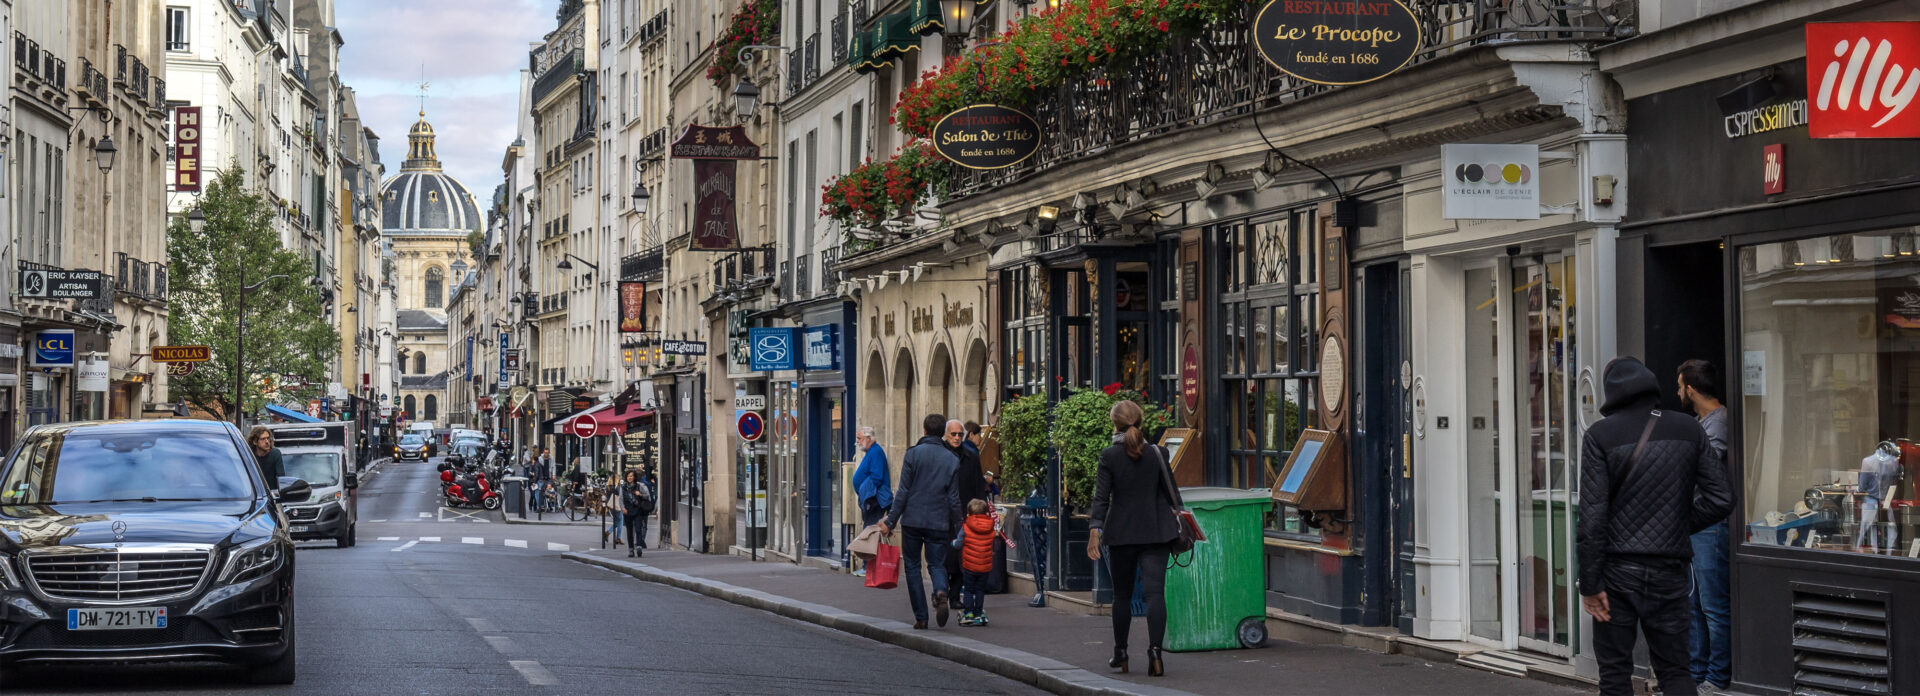 shoppingcentre Paris rejse guide tips